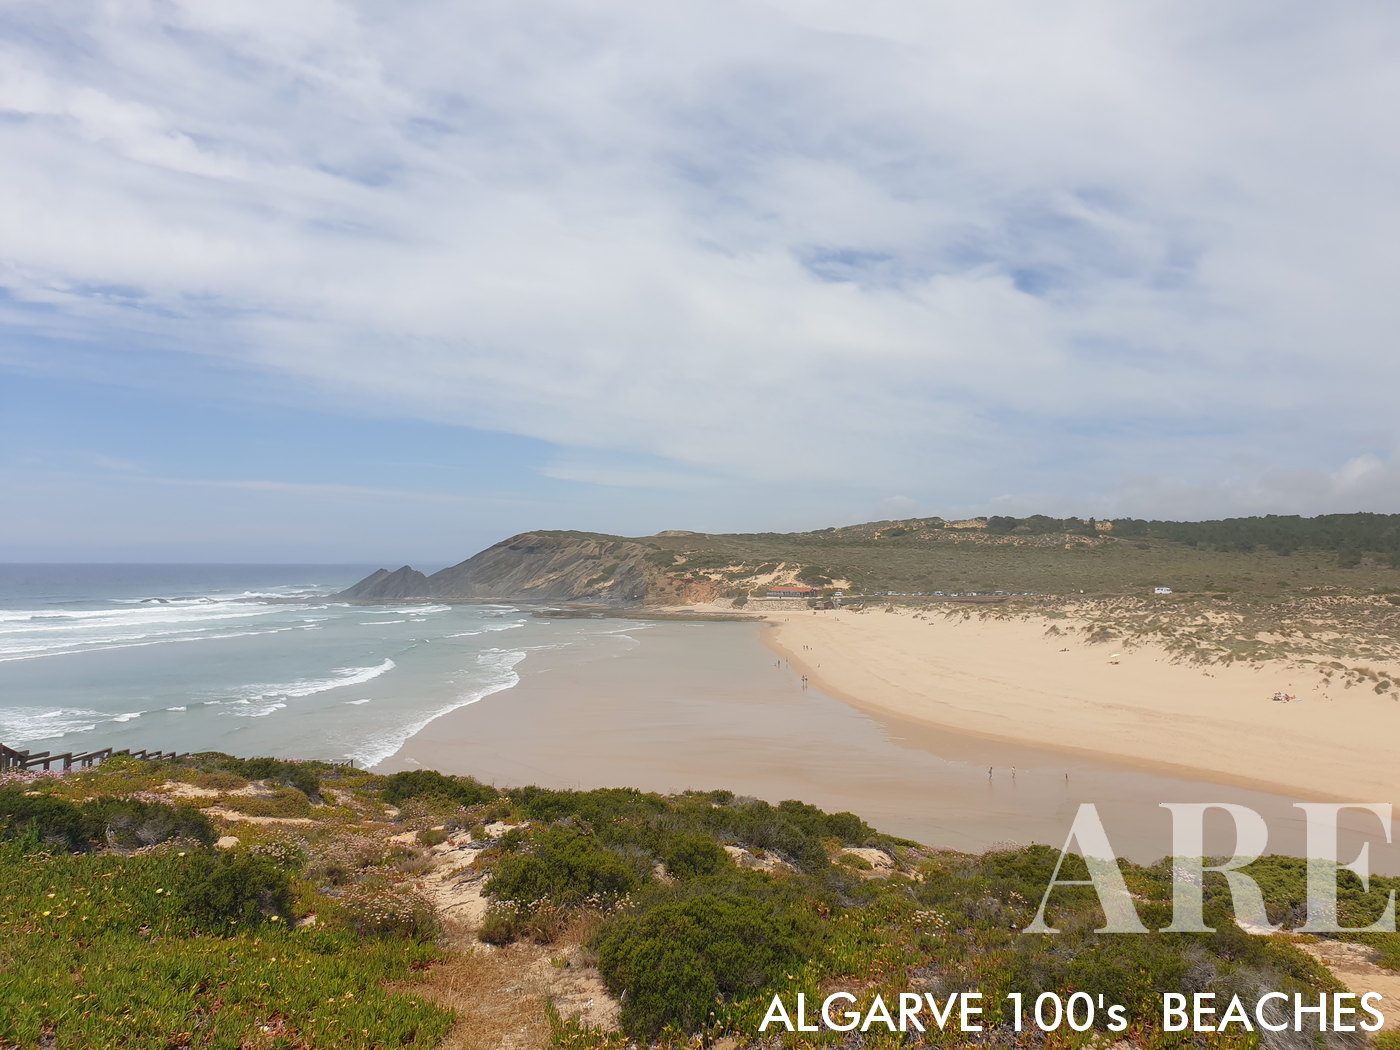 Do alto da falésia, a Praia da Amoreira revela uma paisagem de beleza natural de cortar a respiração. A vista é marcada pelas dunas tendo como pano de fundo o oceano.